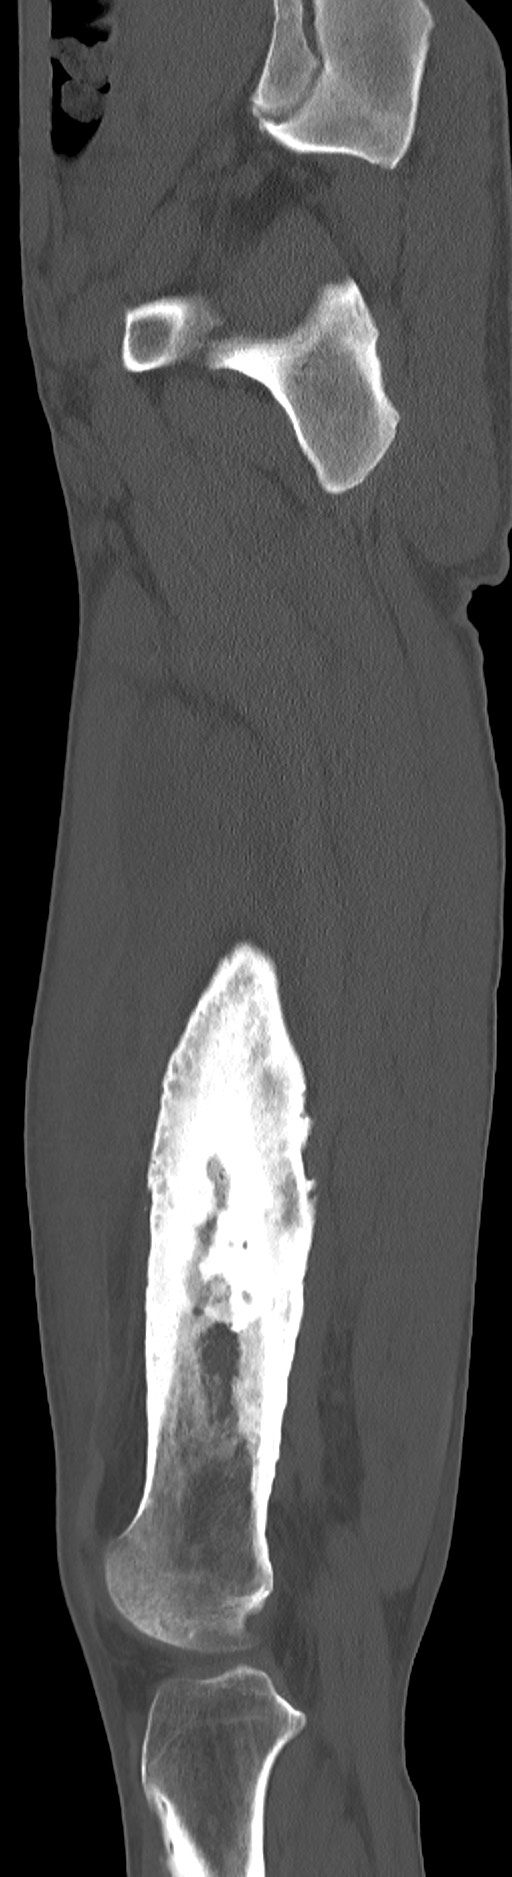 Chronic osteomyelitis (with sequestrum) (Radiopaedia 74813-85822 C 74).jpg